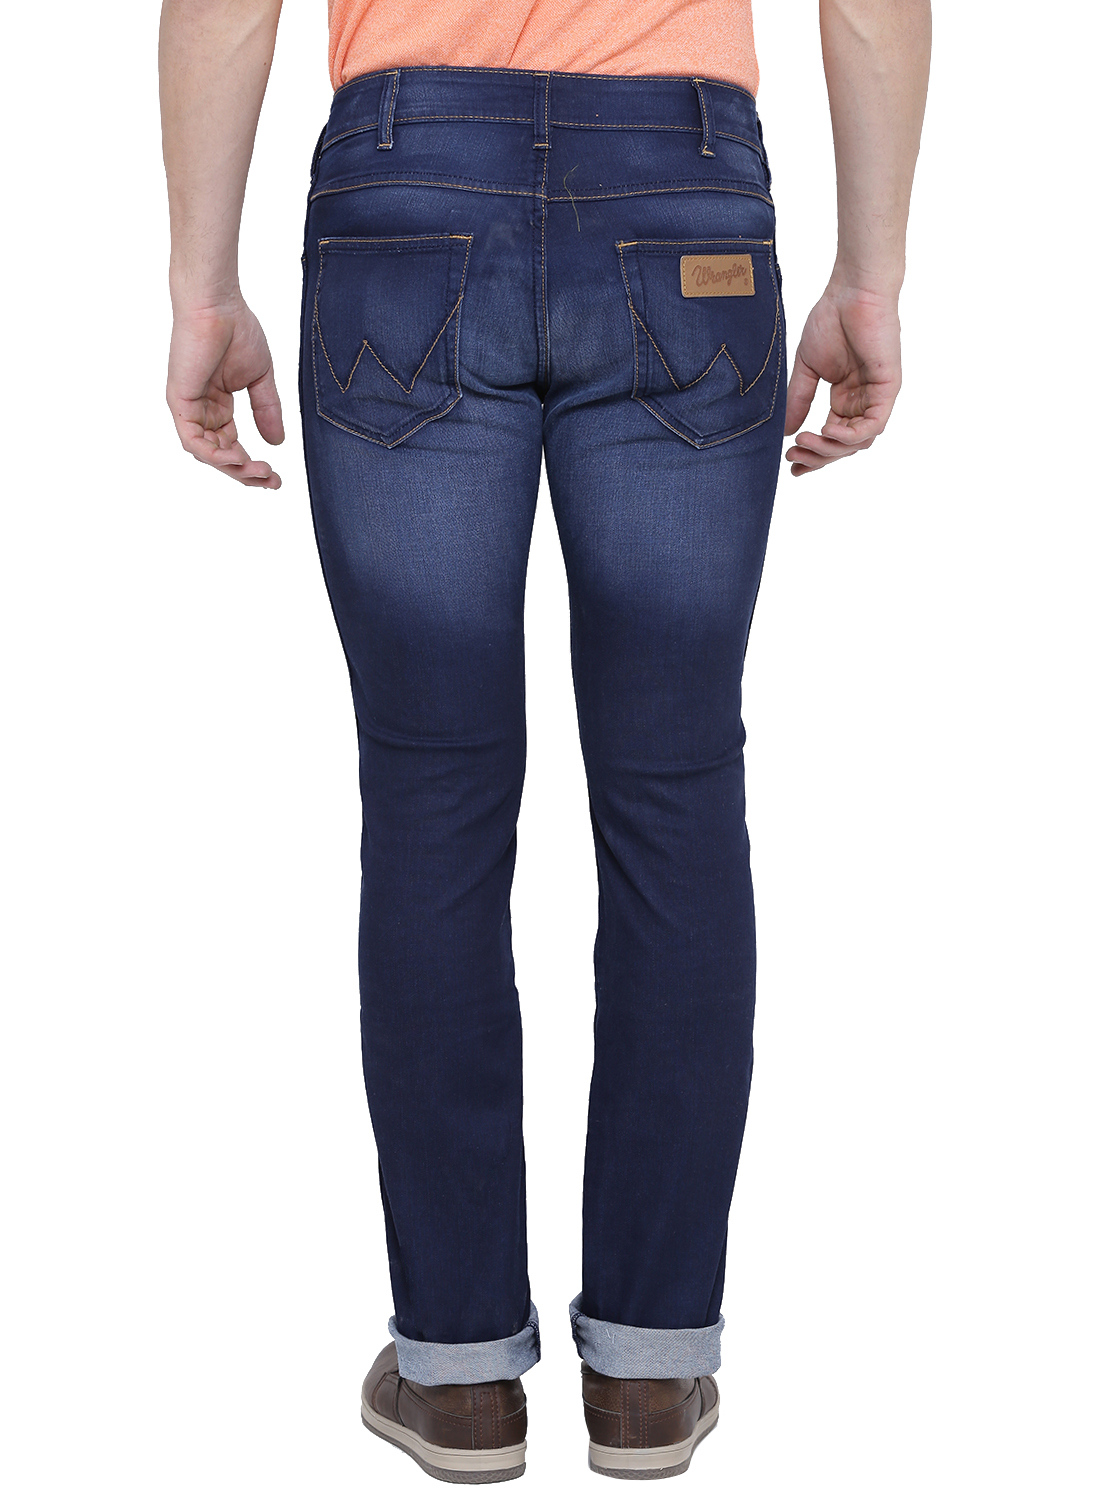 Buy Wrangler Blue Mid Rise Slim Fit Jeans For Men Online @ ₹1957 from ...